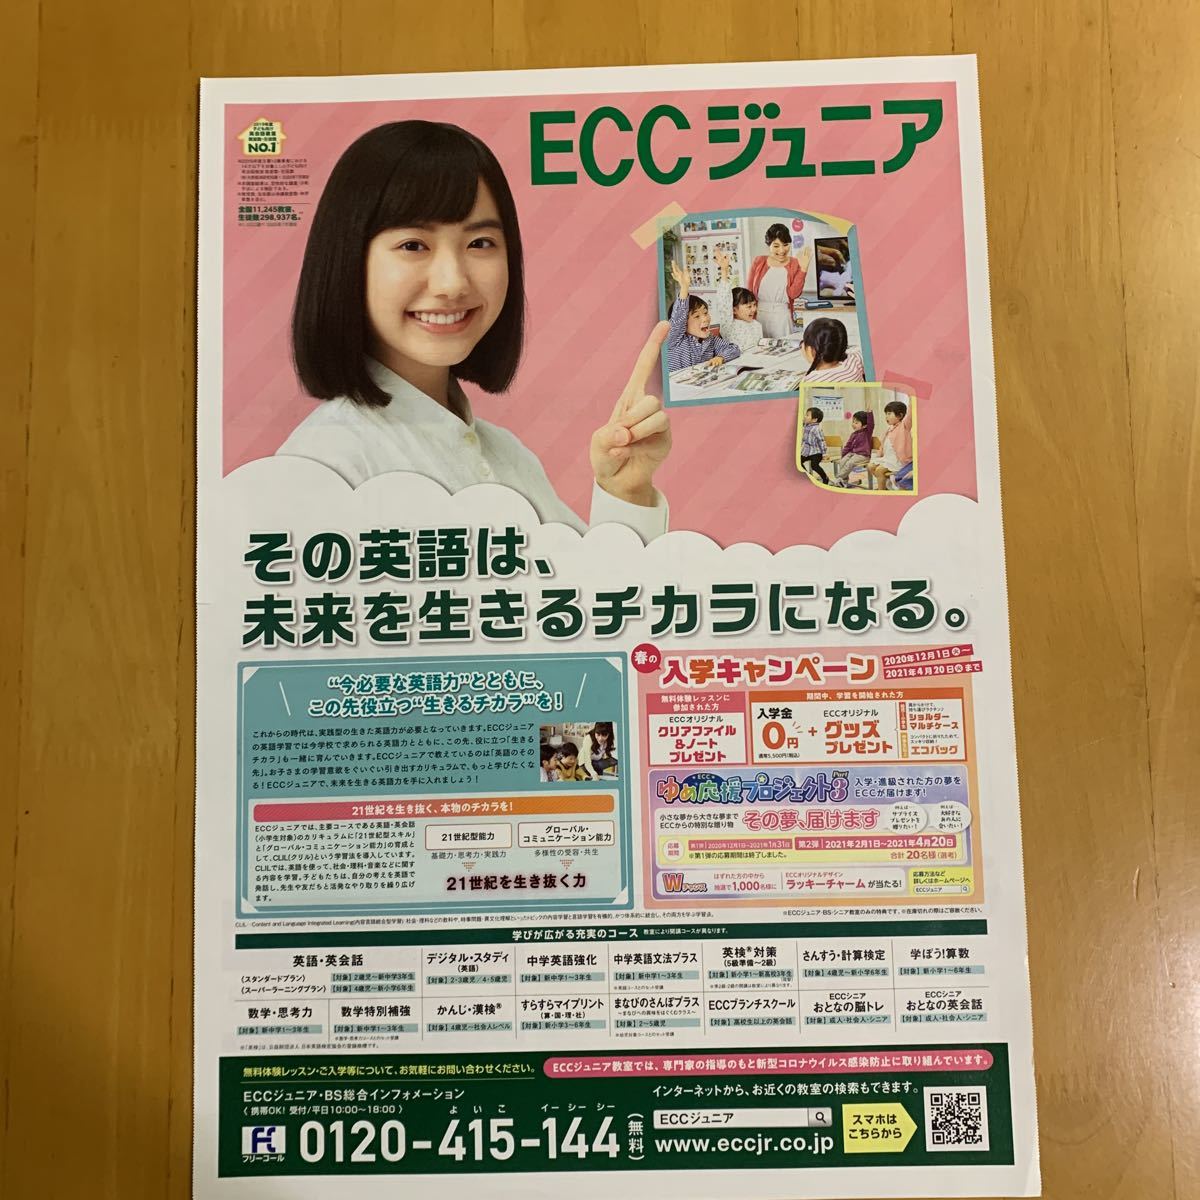 ECCジュニア 芦田愛菜 チラシ 折り込み広告